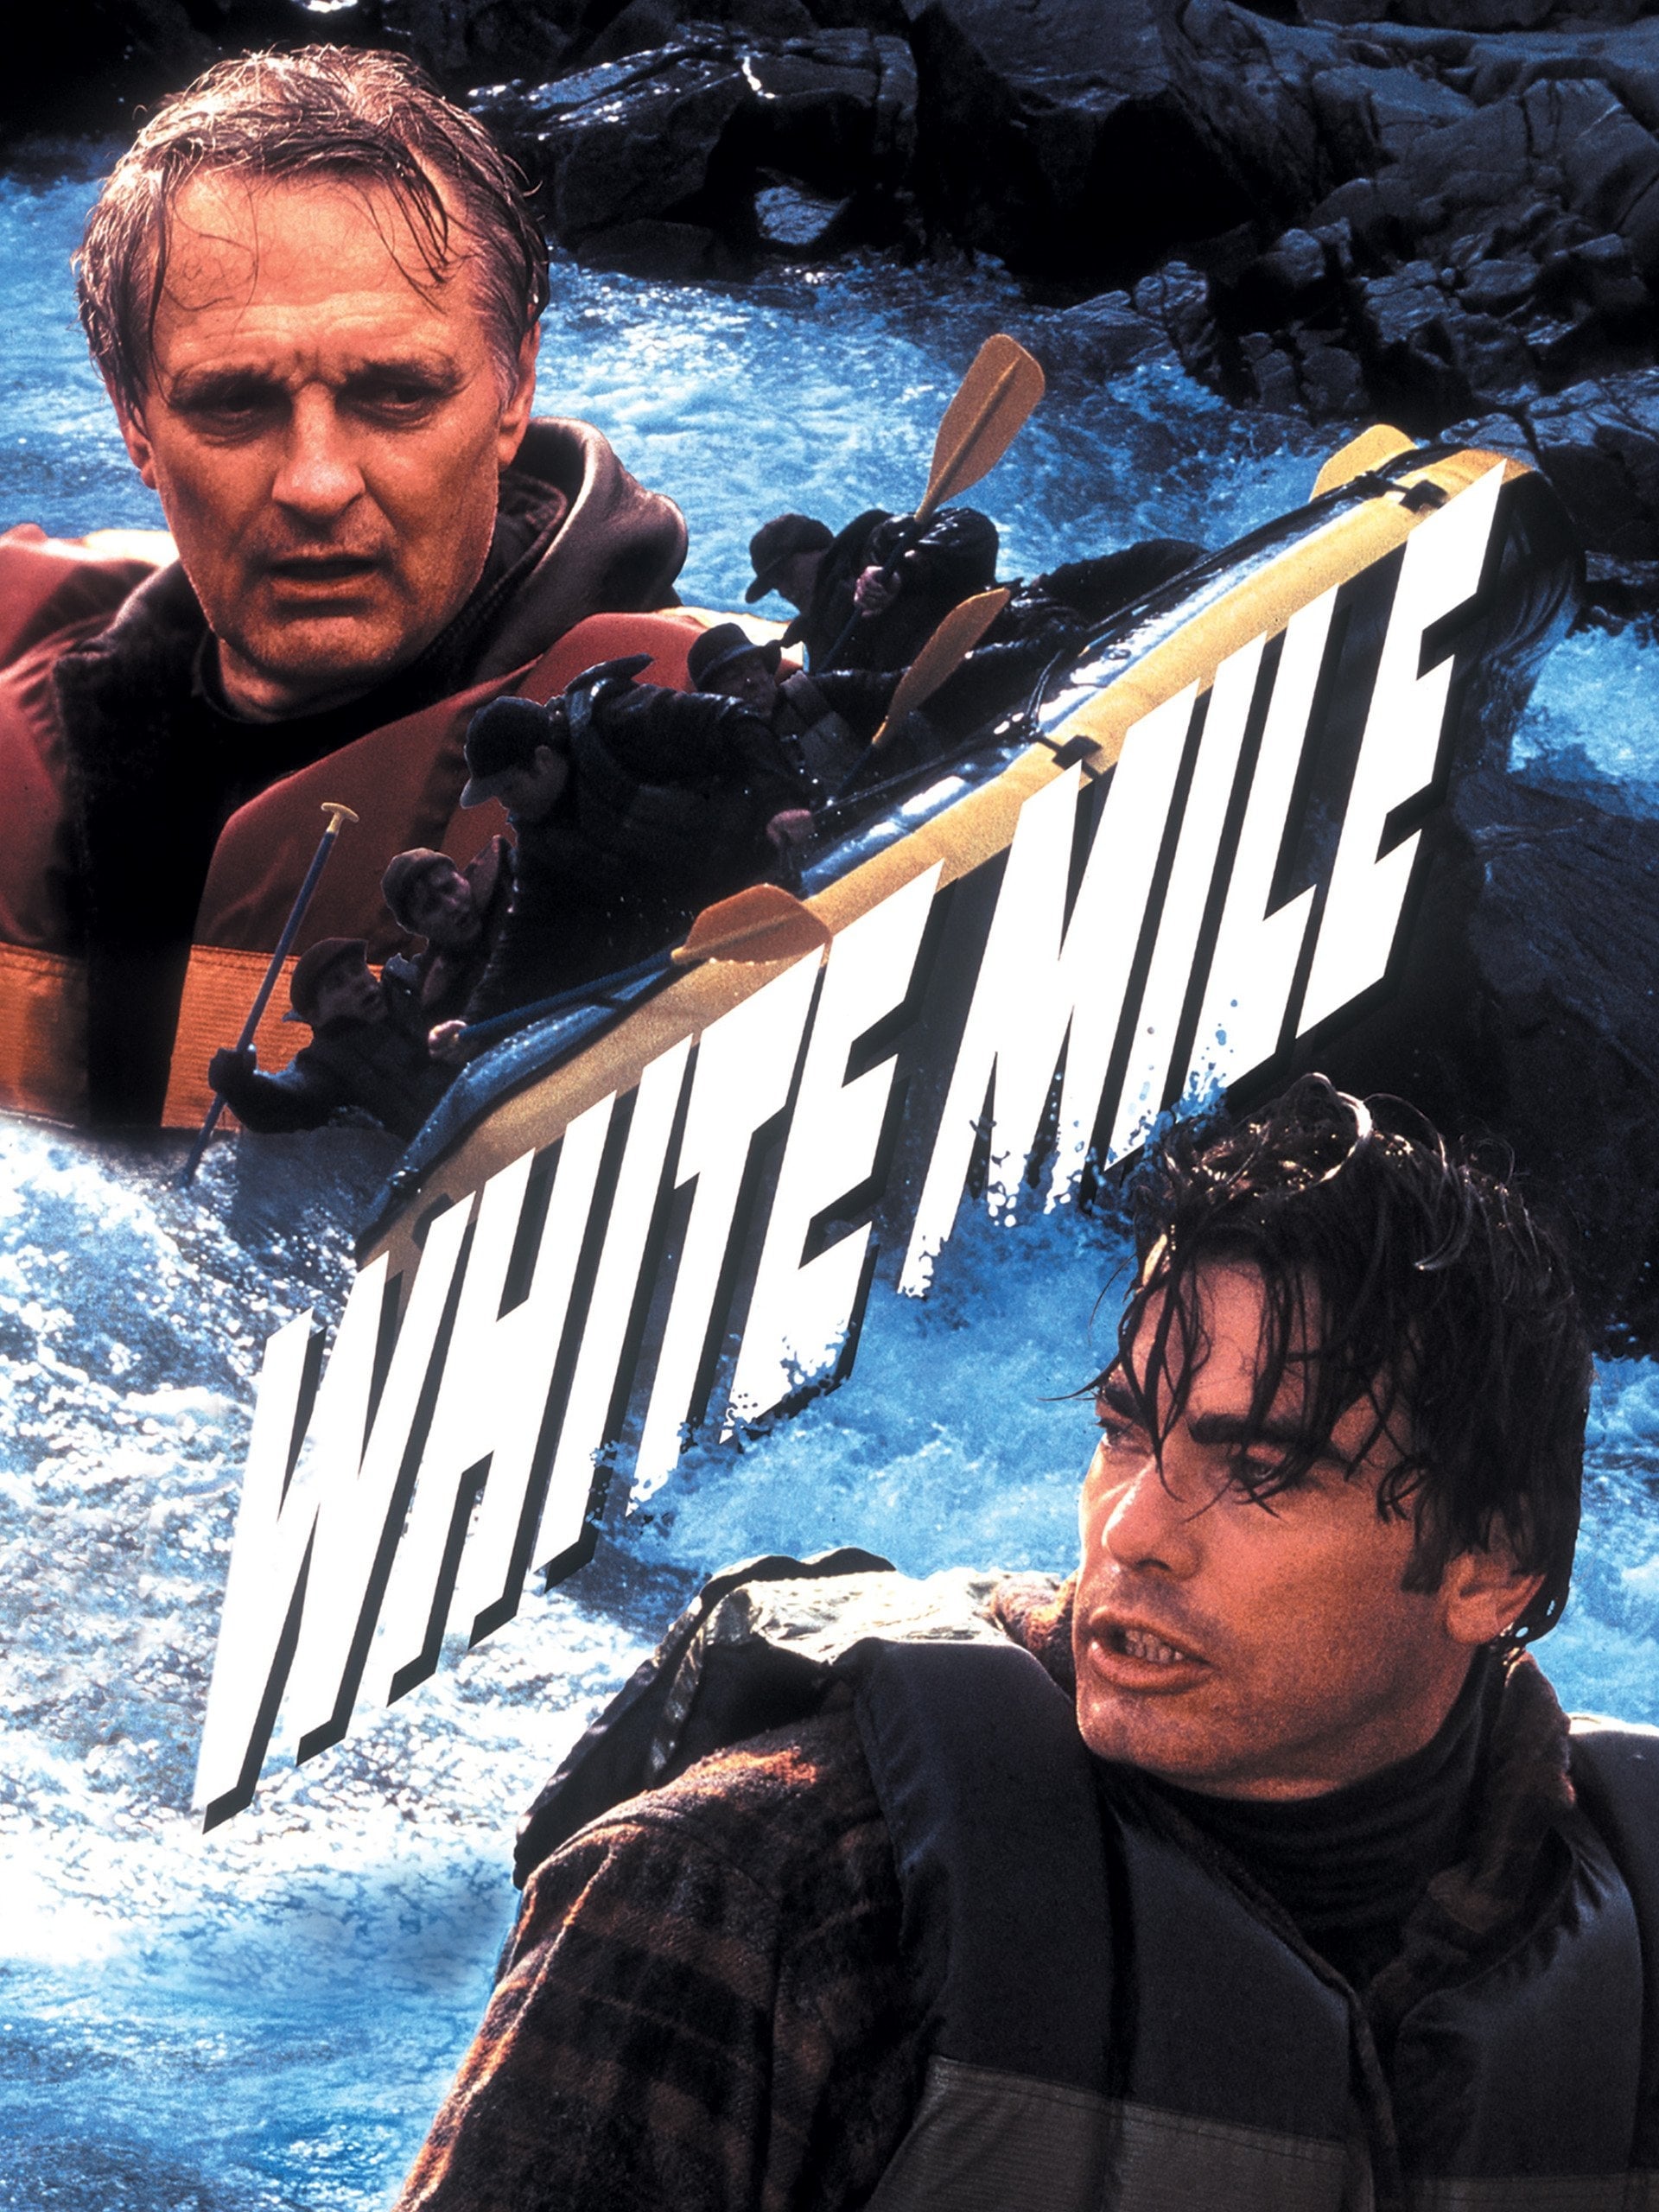 Reißende Strömung – Rafting-Trips ins Verderben (1994)